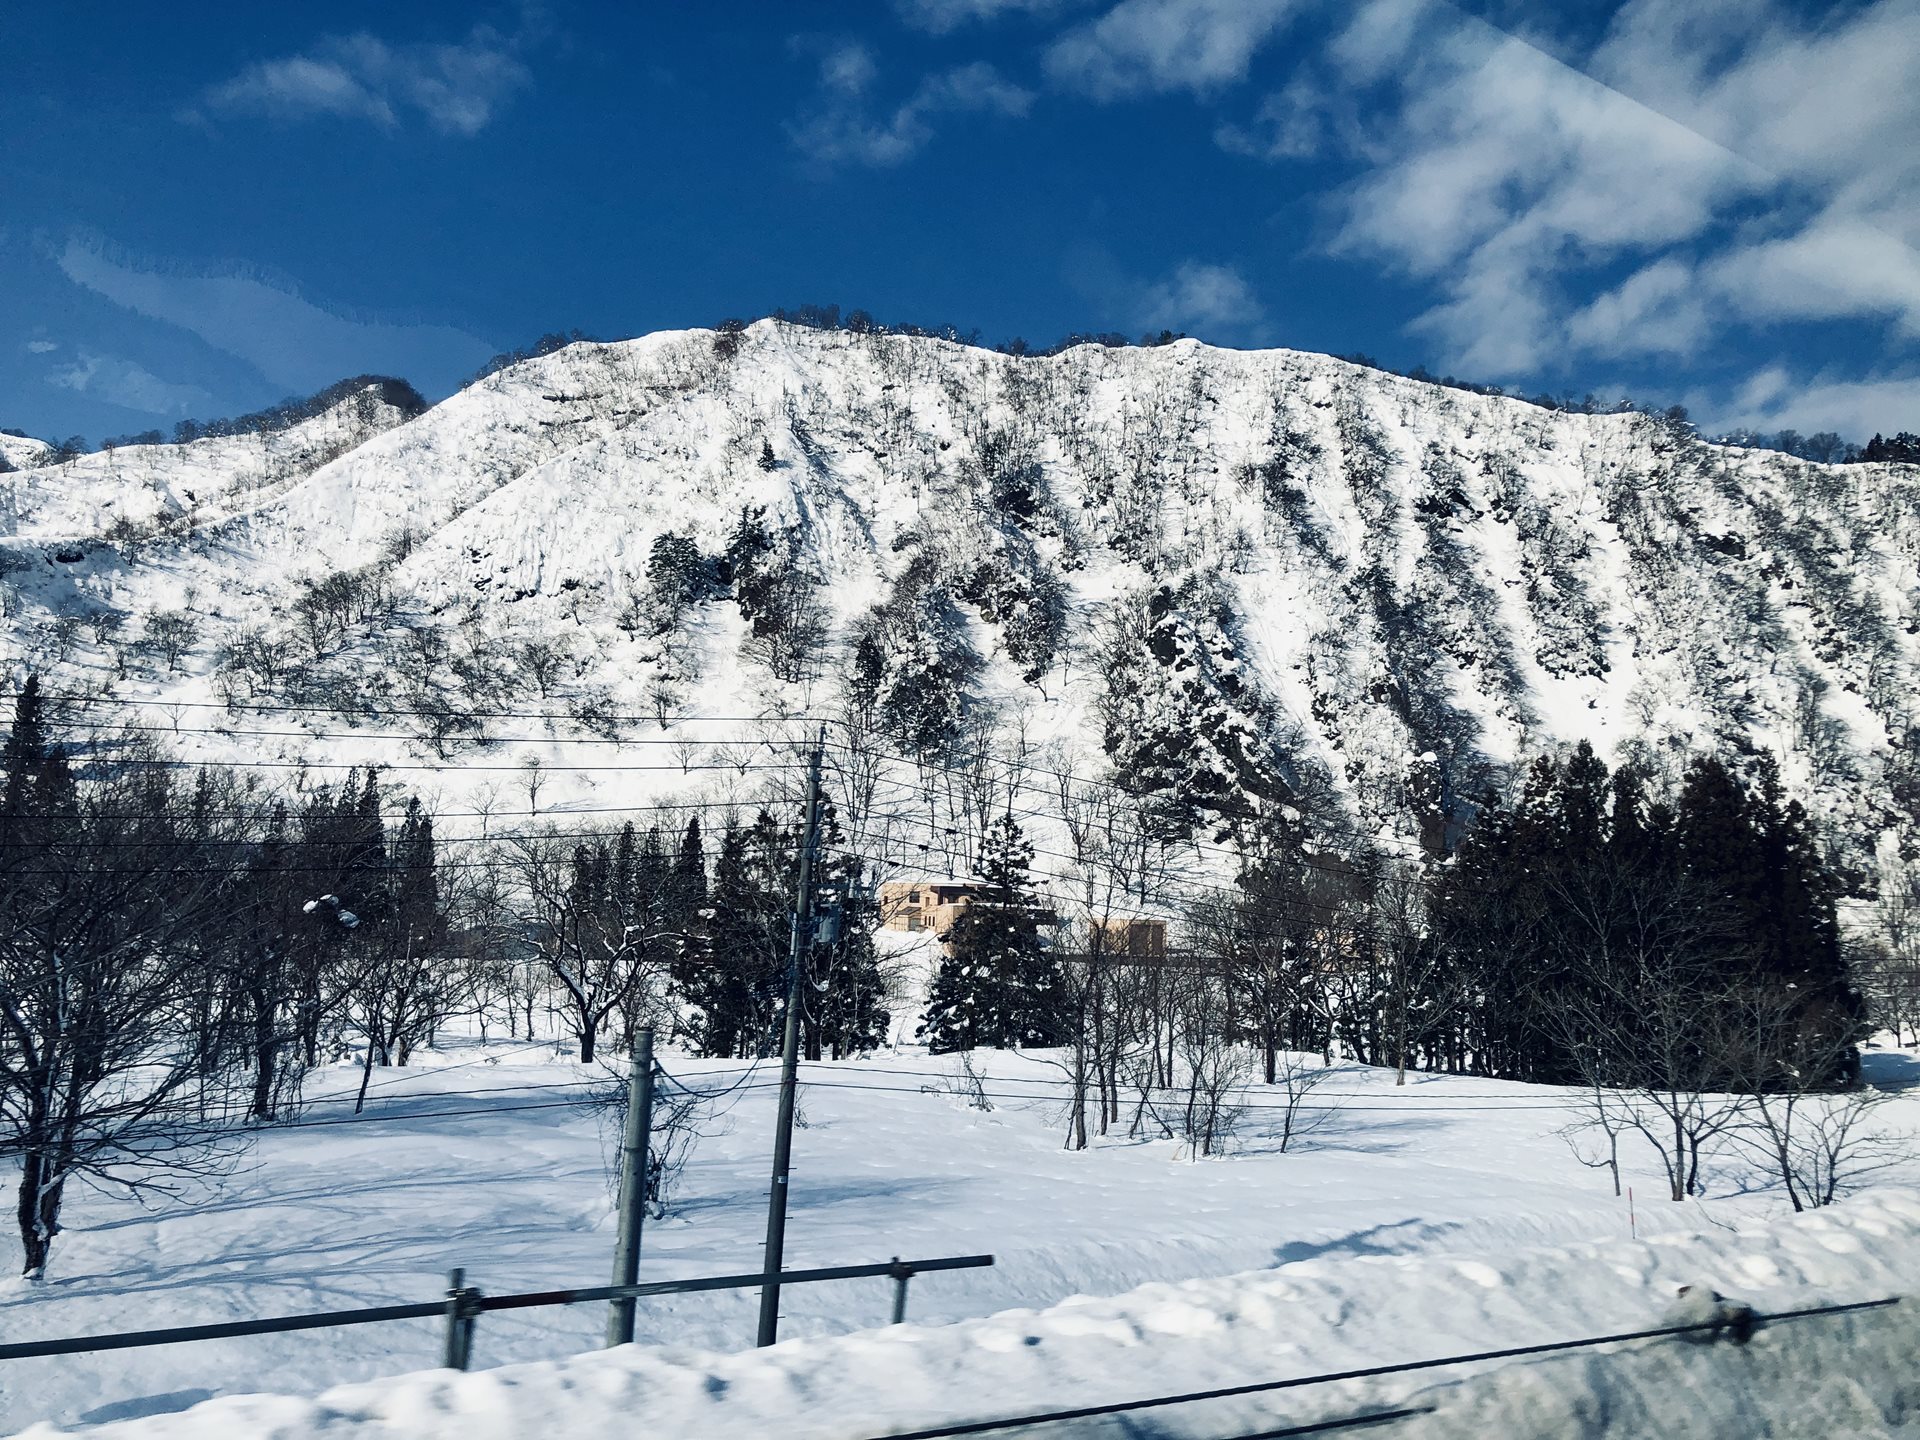 Snowy mountain in Japan